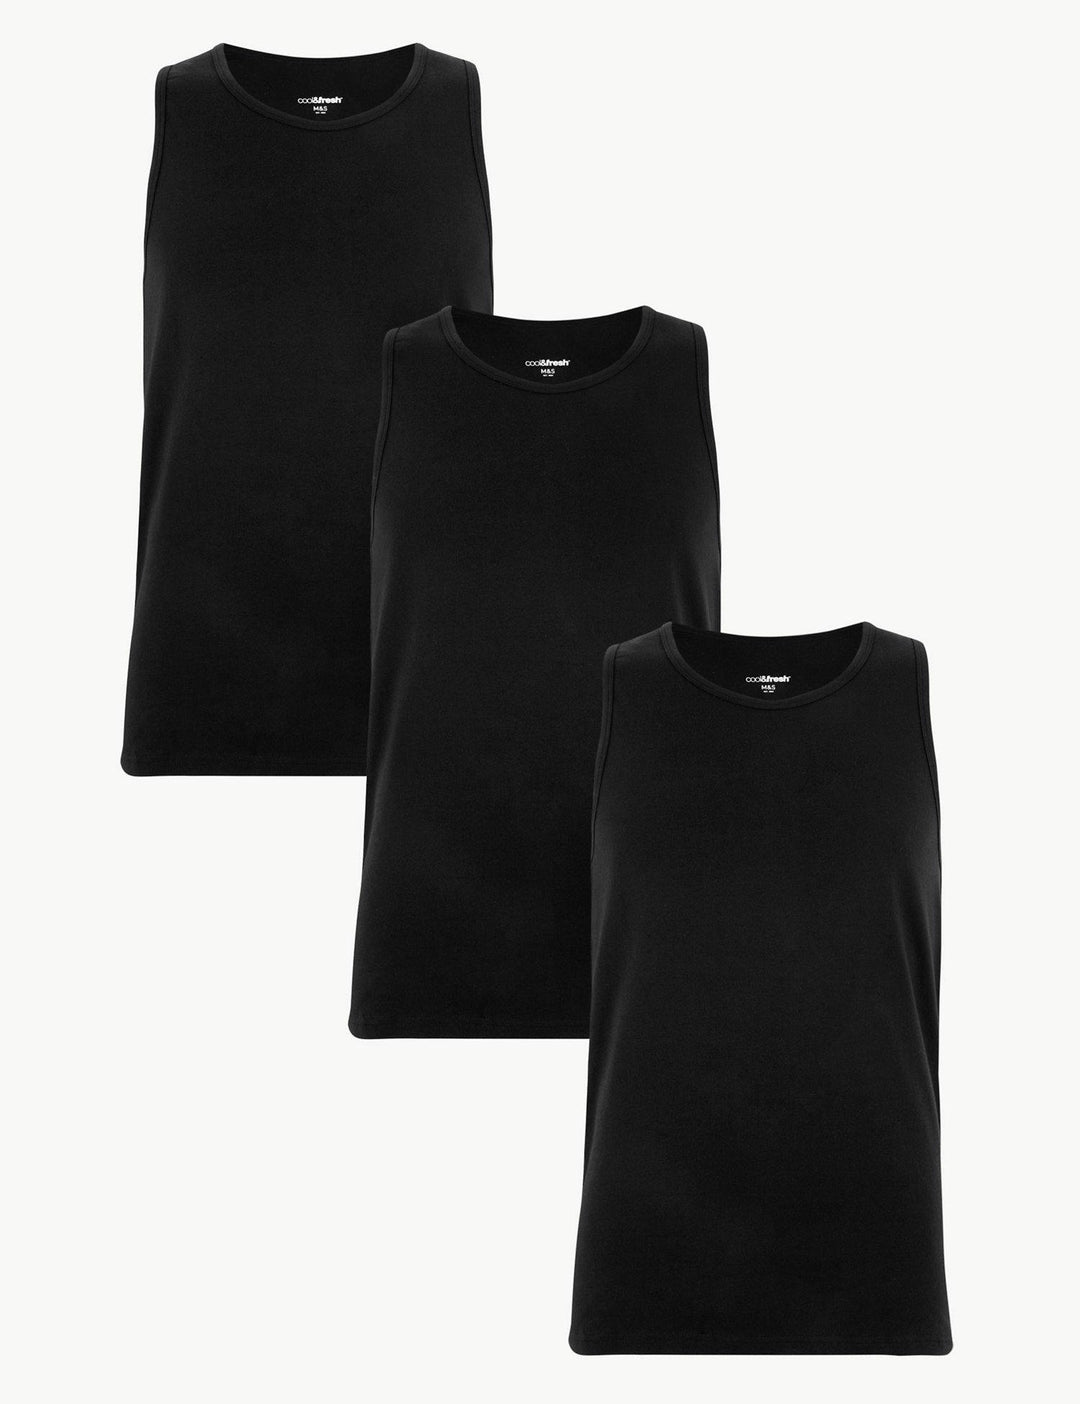 M&S Men Cool & Fresh 3-Pair Cotton Lycra S/L Vest T14/4505S